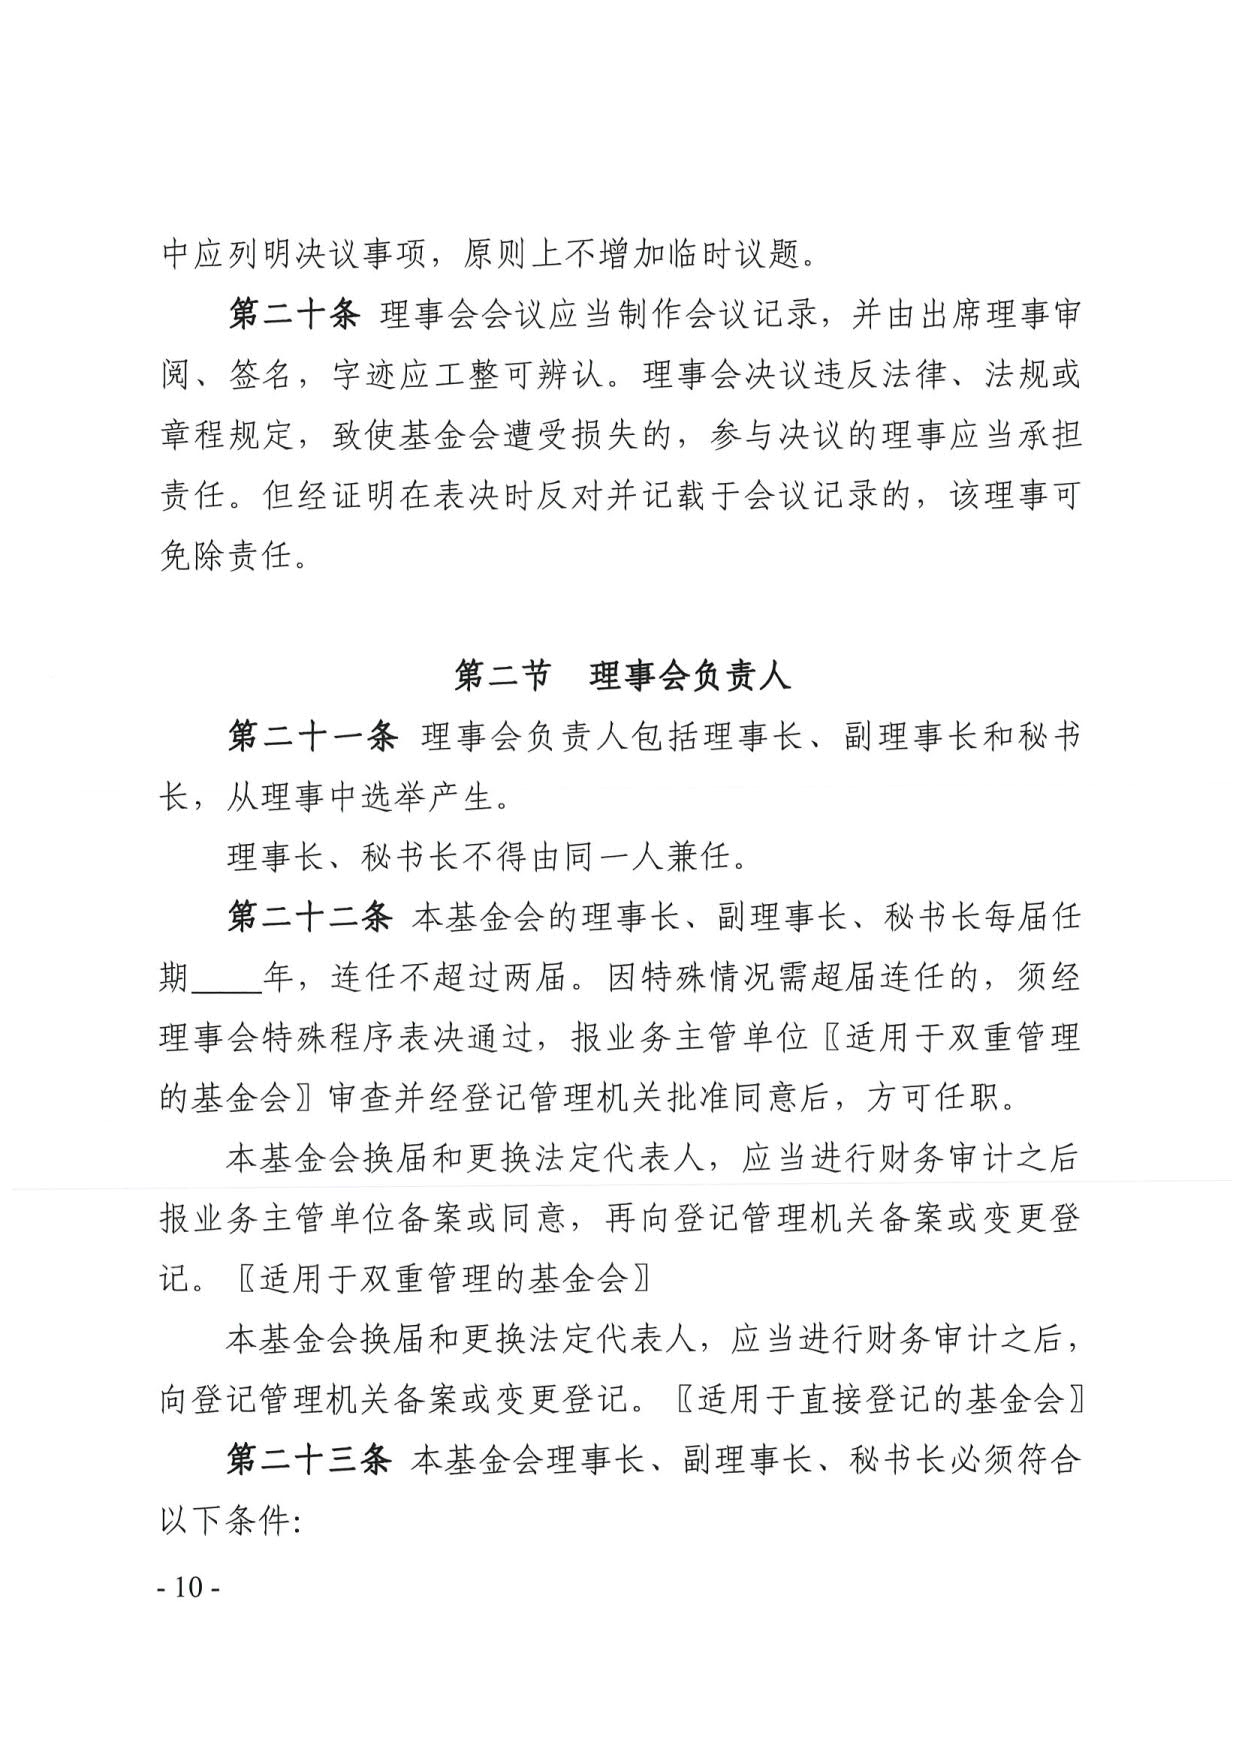 广东省民政厅关于印发《广东省基金会章程示范文本》的通知(4)_10.jpg